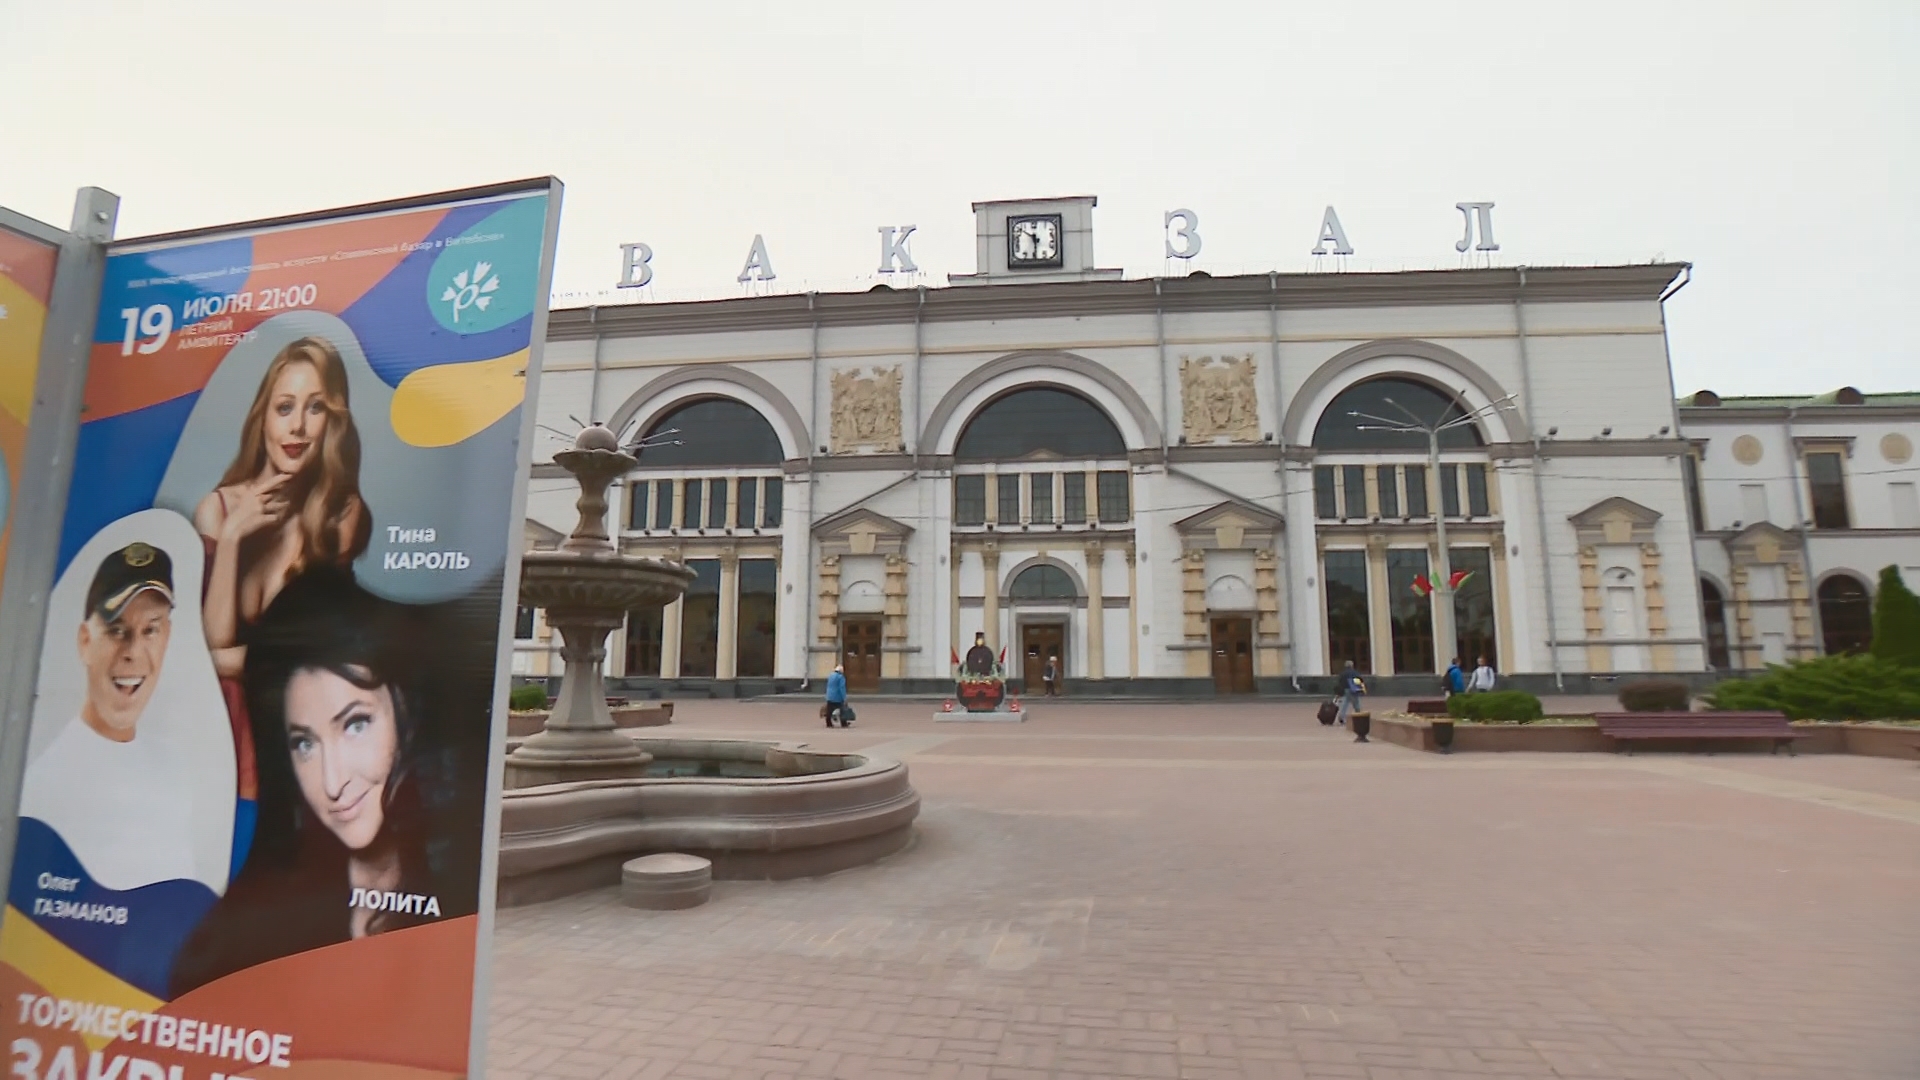 Славянский базар 2020: Витебск встречает гостей фестиваля